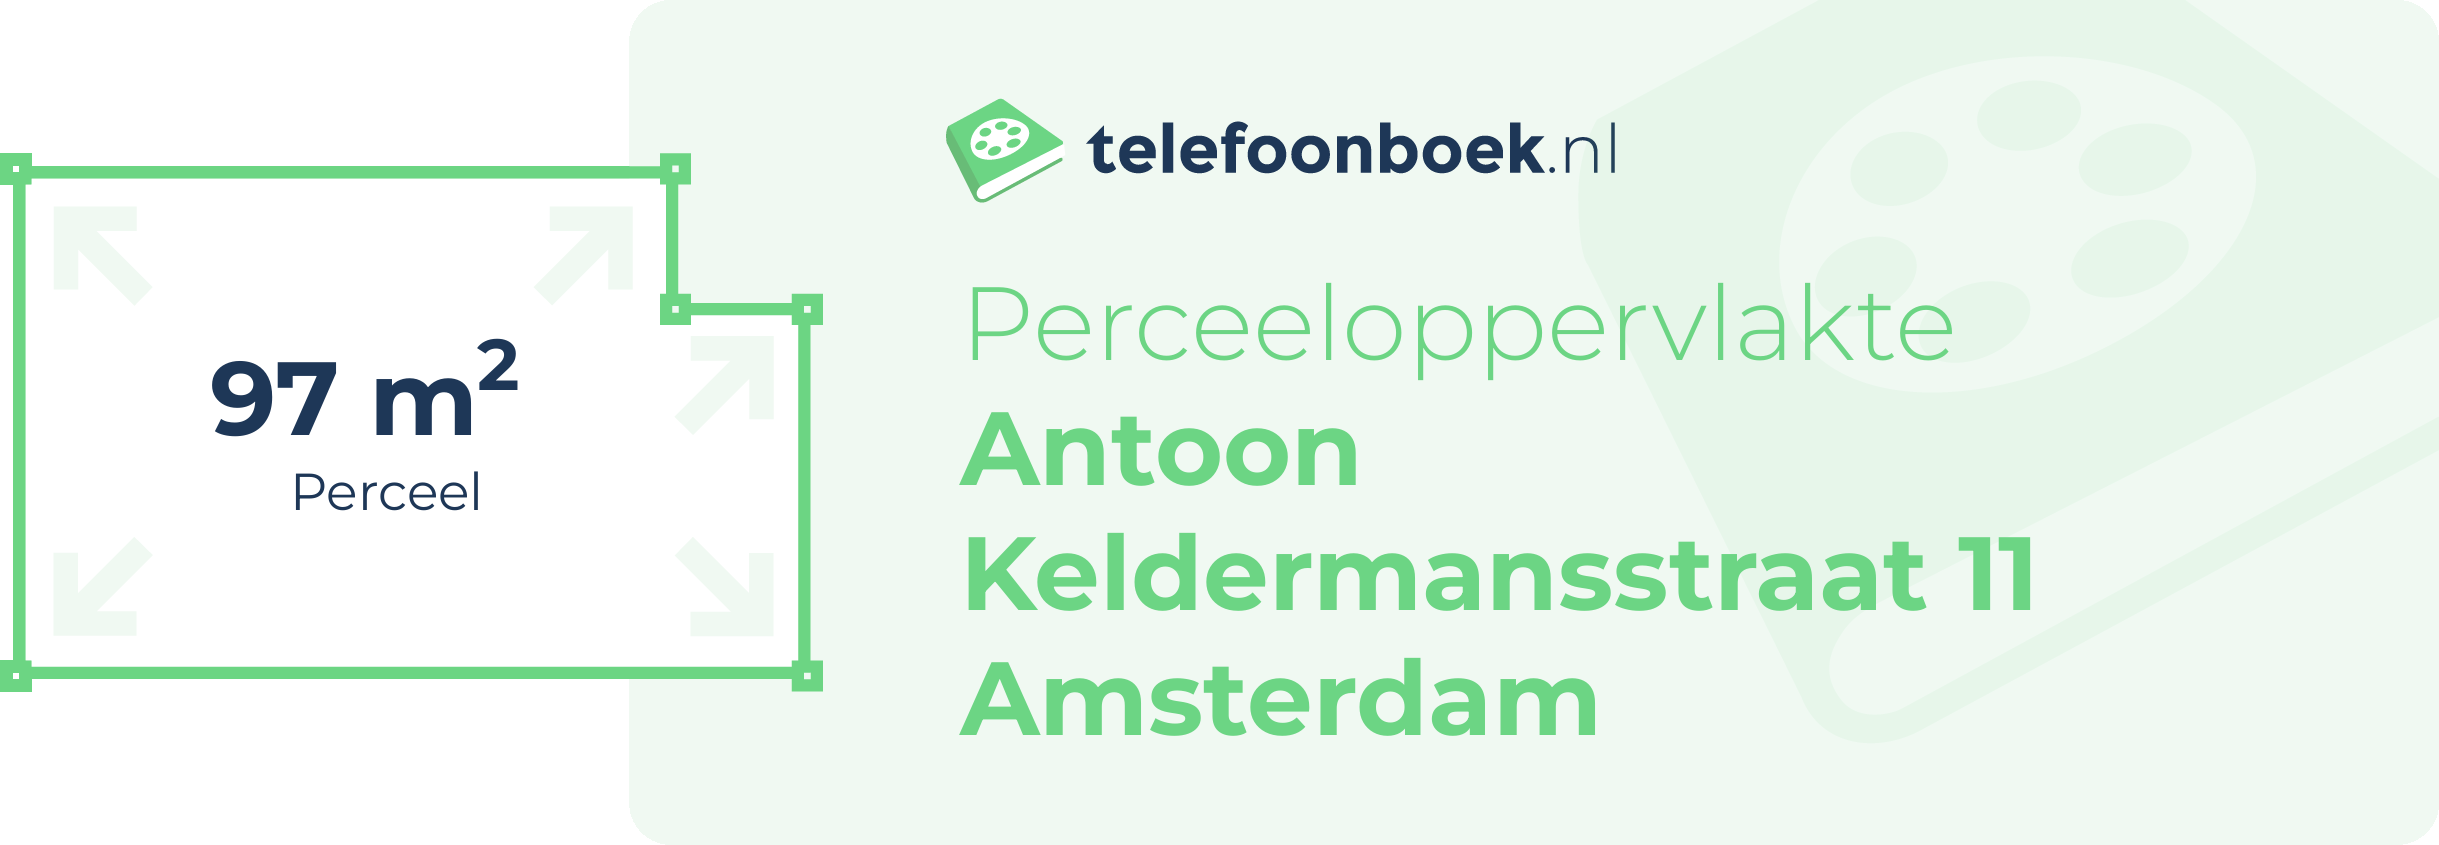 Perceeloppervlakte Antoon Keldermansstraat 11 Amsterdam